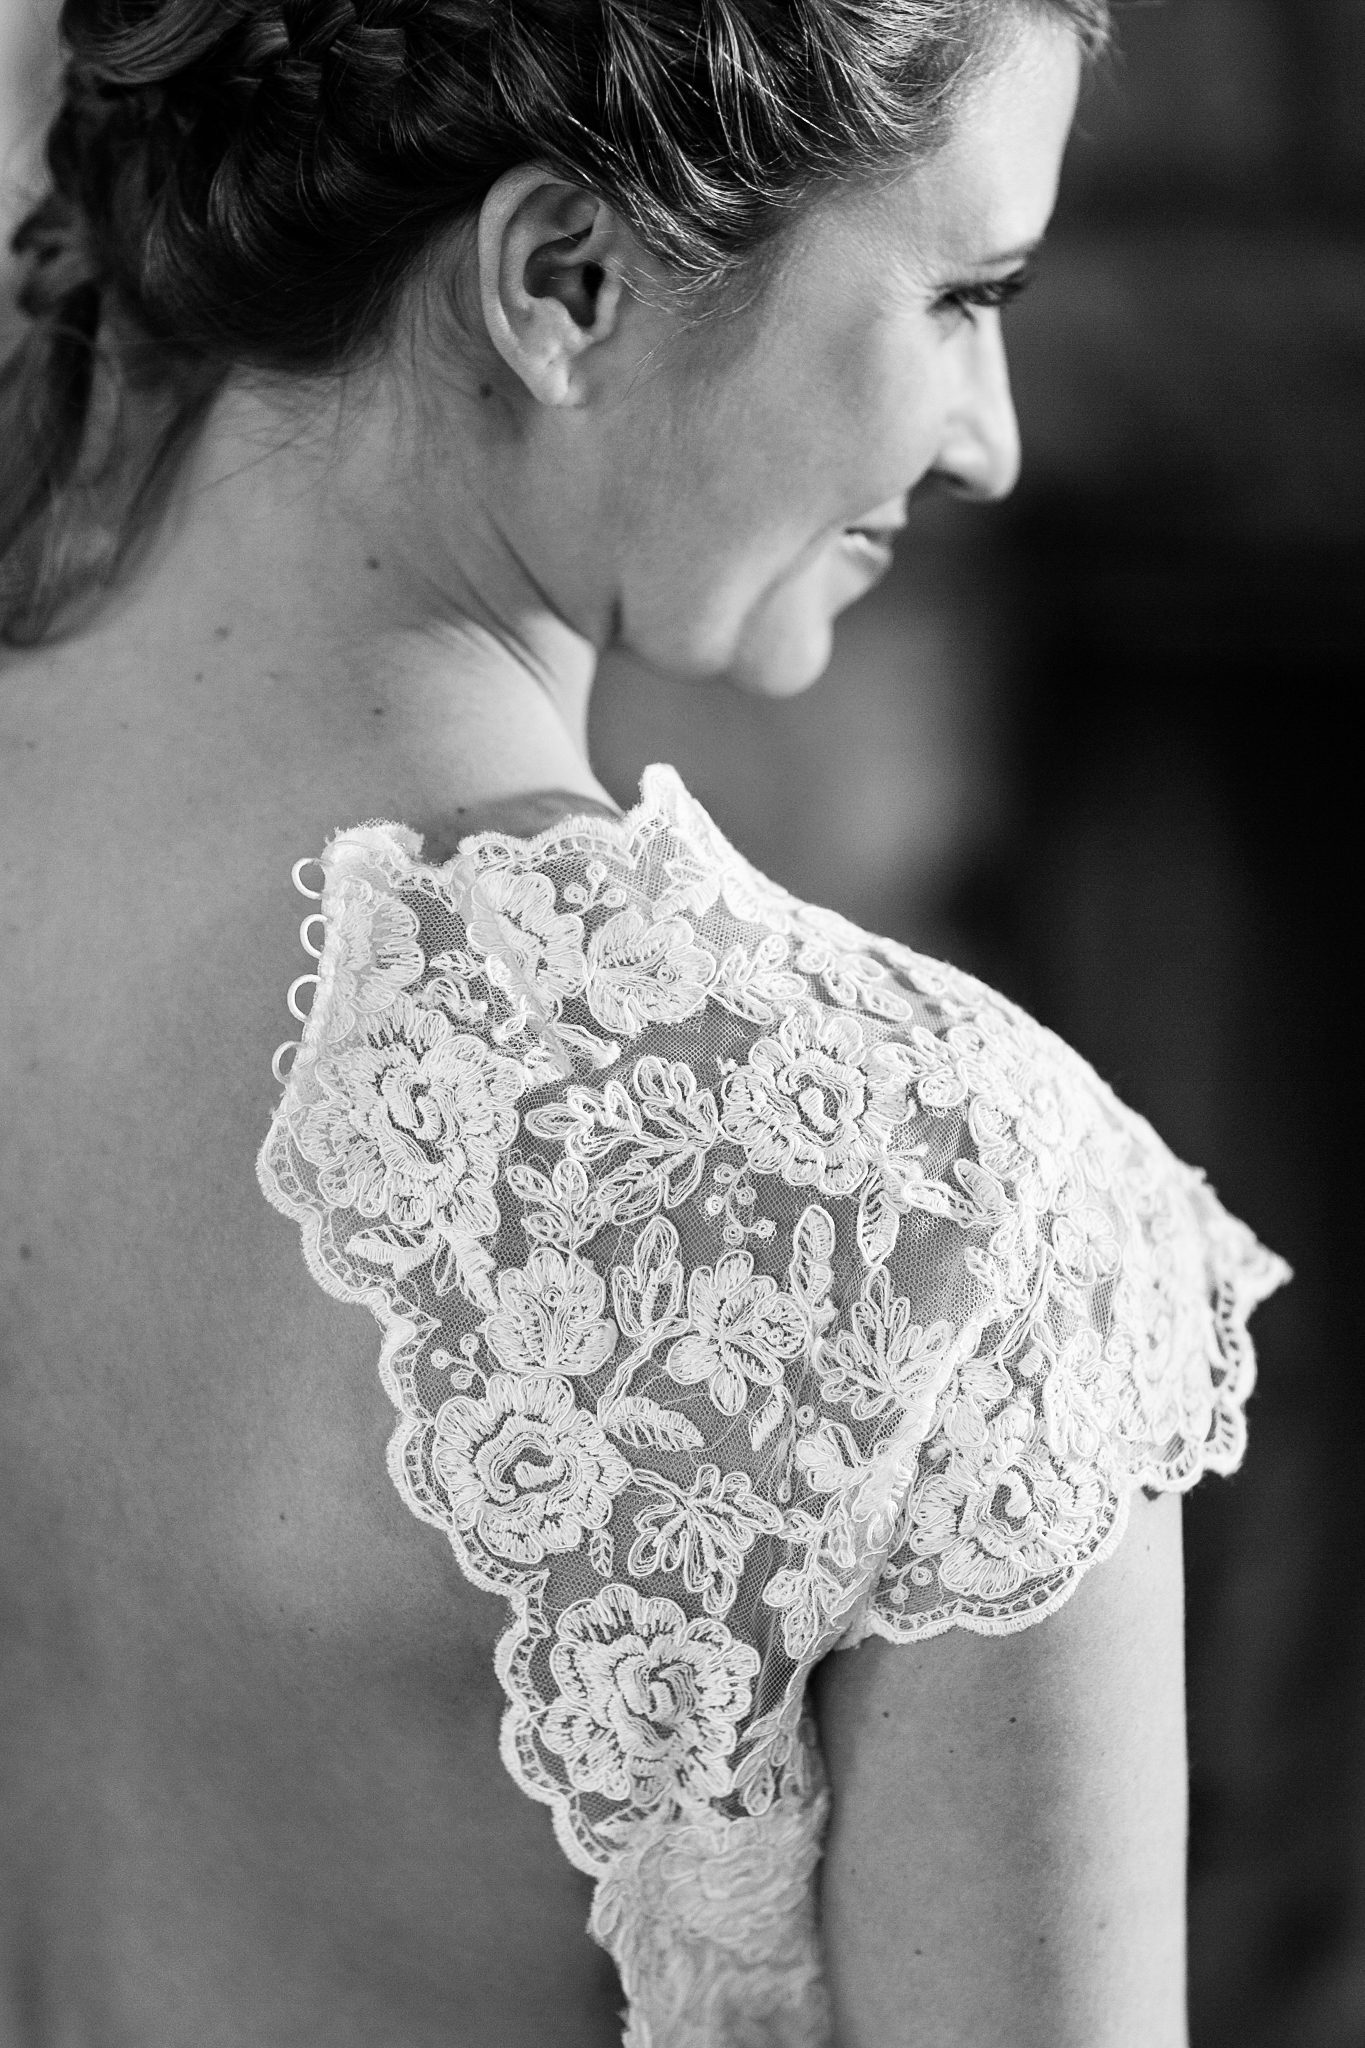 bride's dress shoulder detail lace